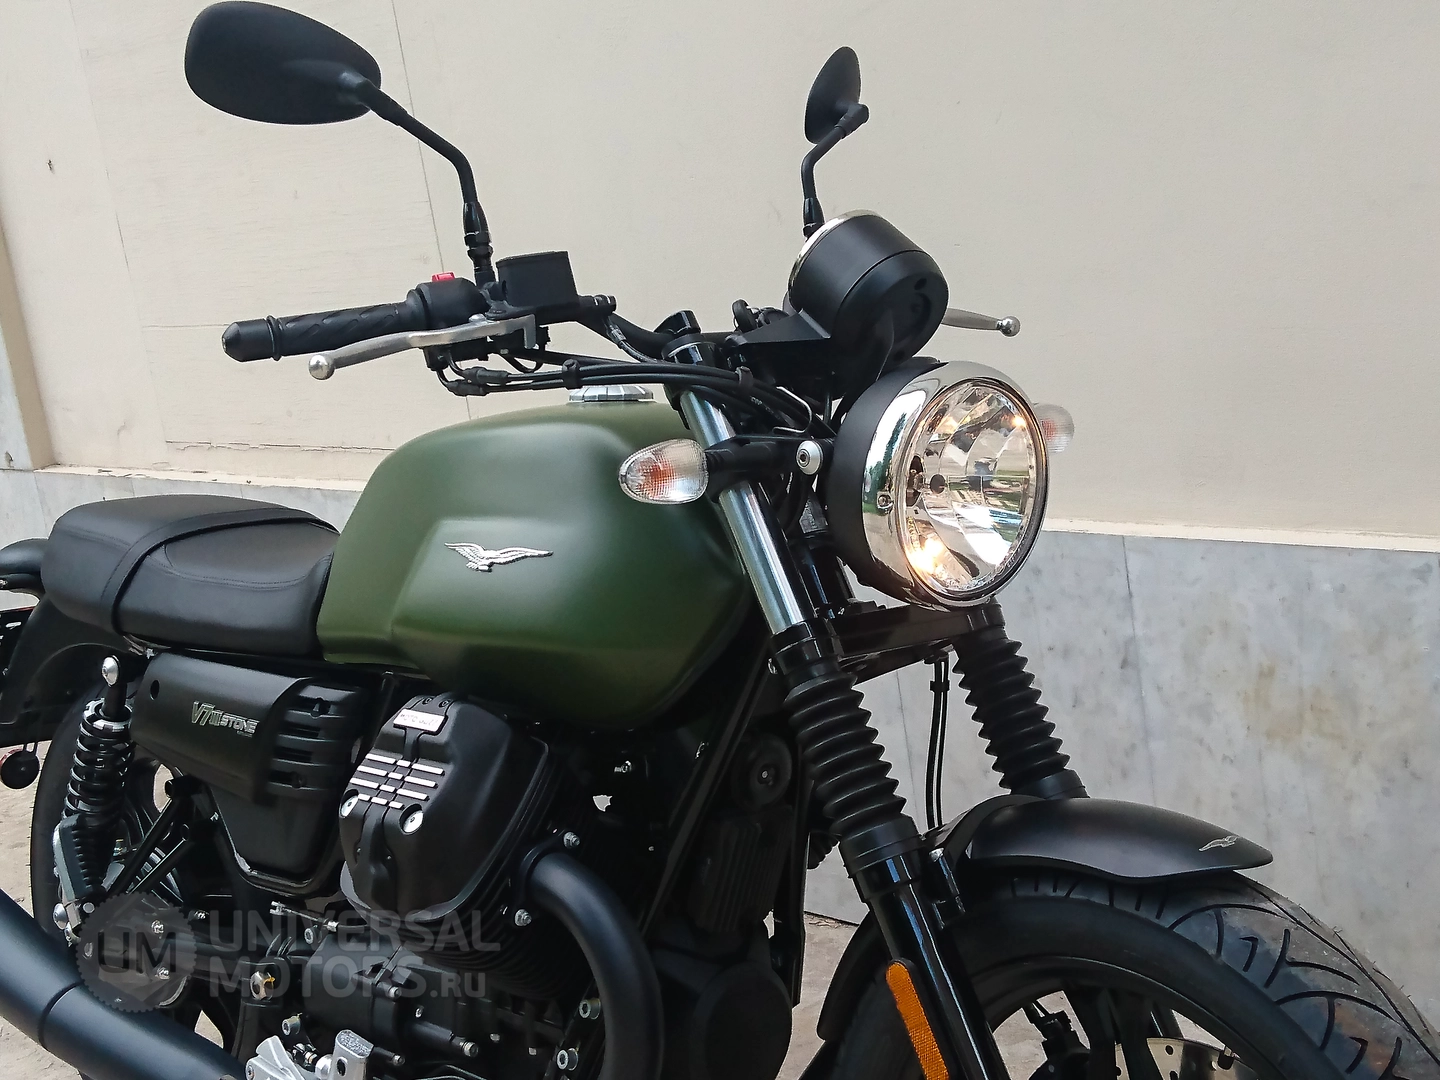 Мотоцикл MOTO GUZZI V7 III Stone ABS, 1862326819749606921